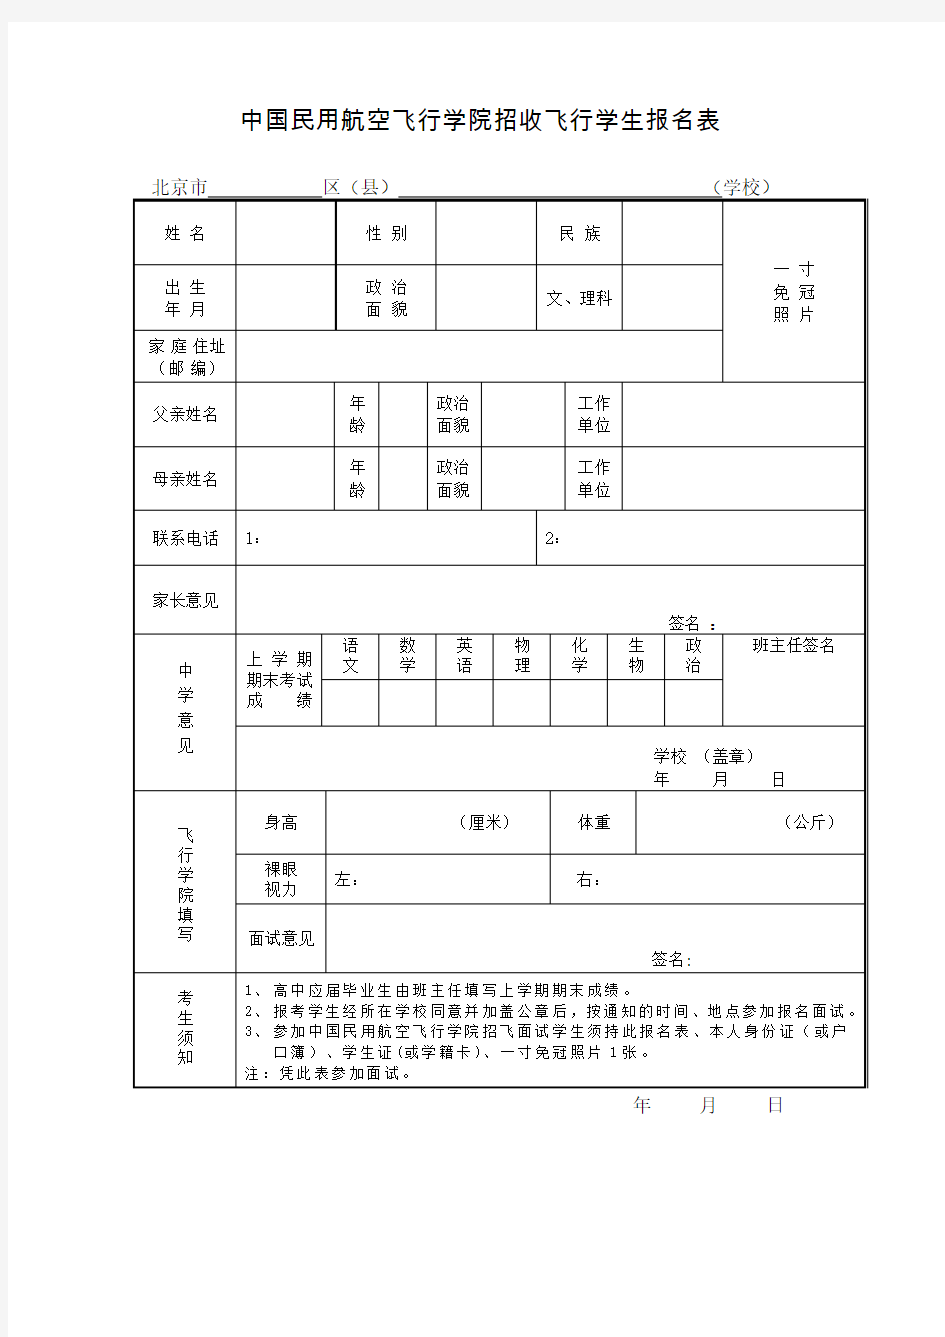 中国民用航空飞行学院招收飞行学生报名表